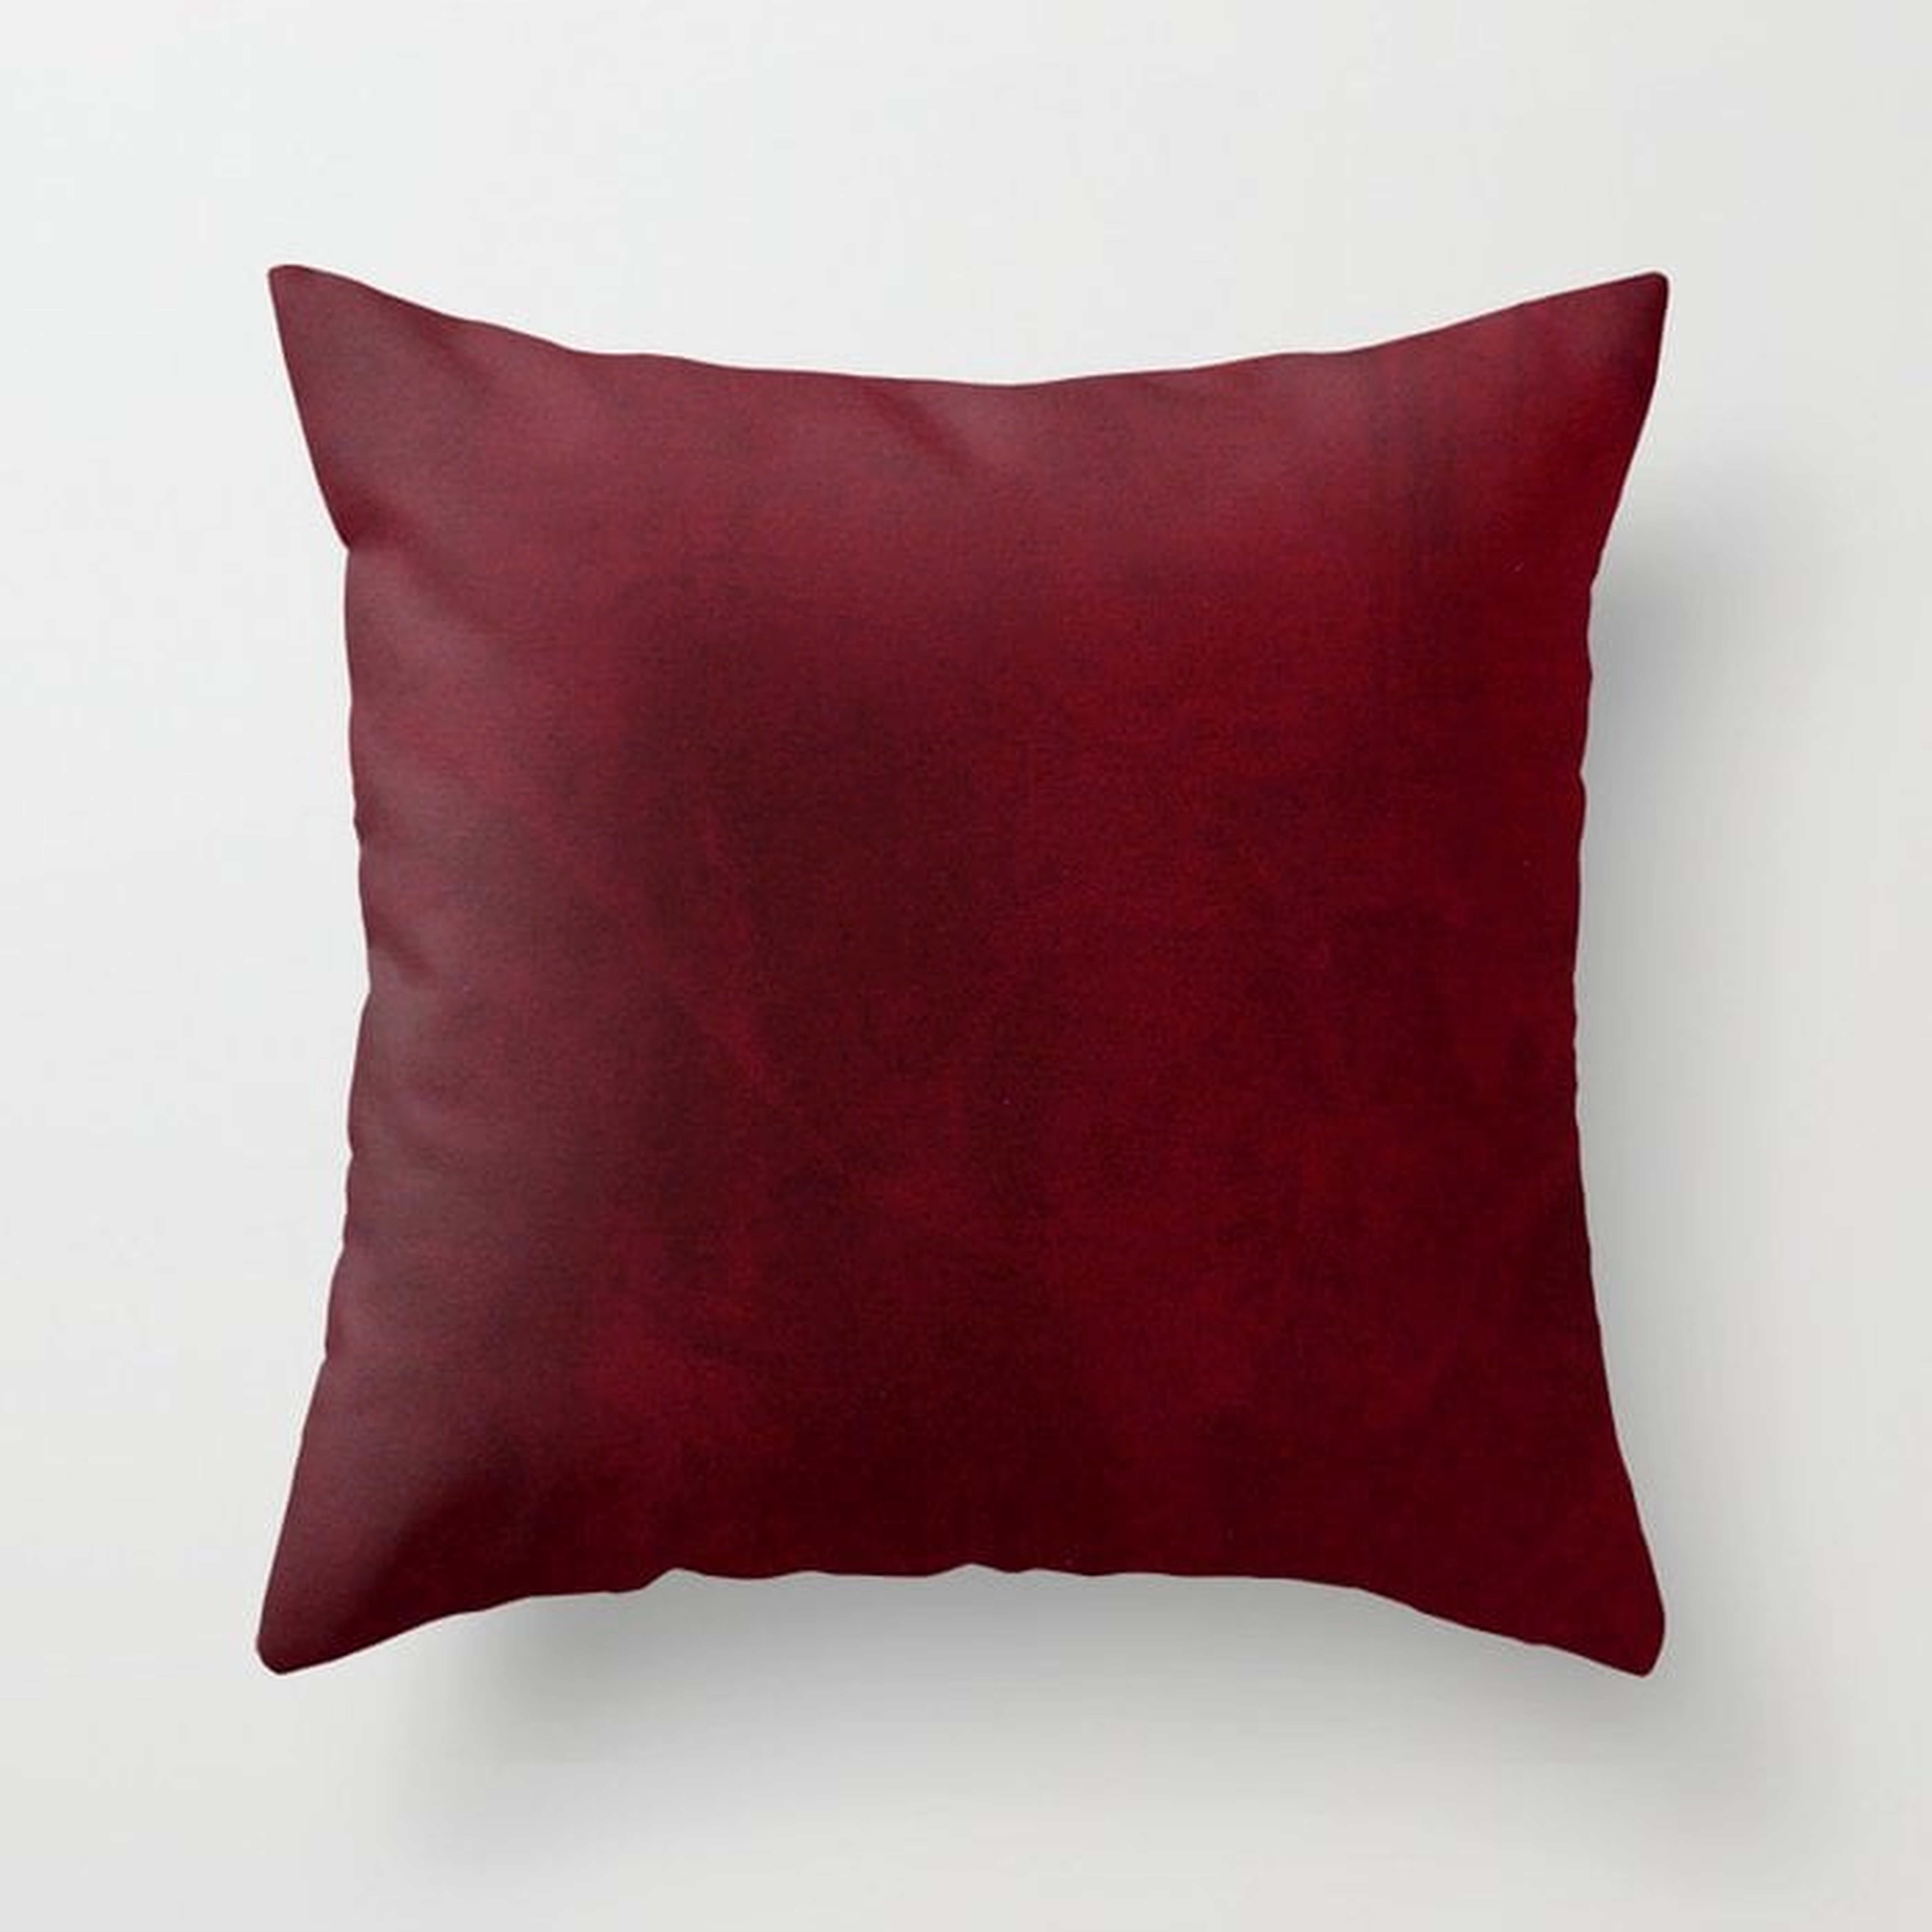 VELVET DESIGN - red, dark, burgundy Throw Pillow - Society6